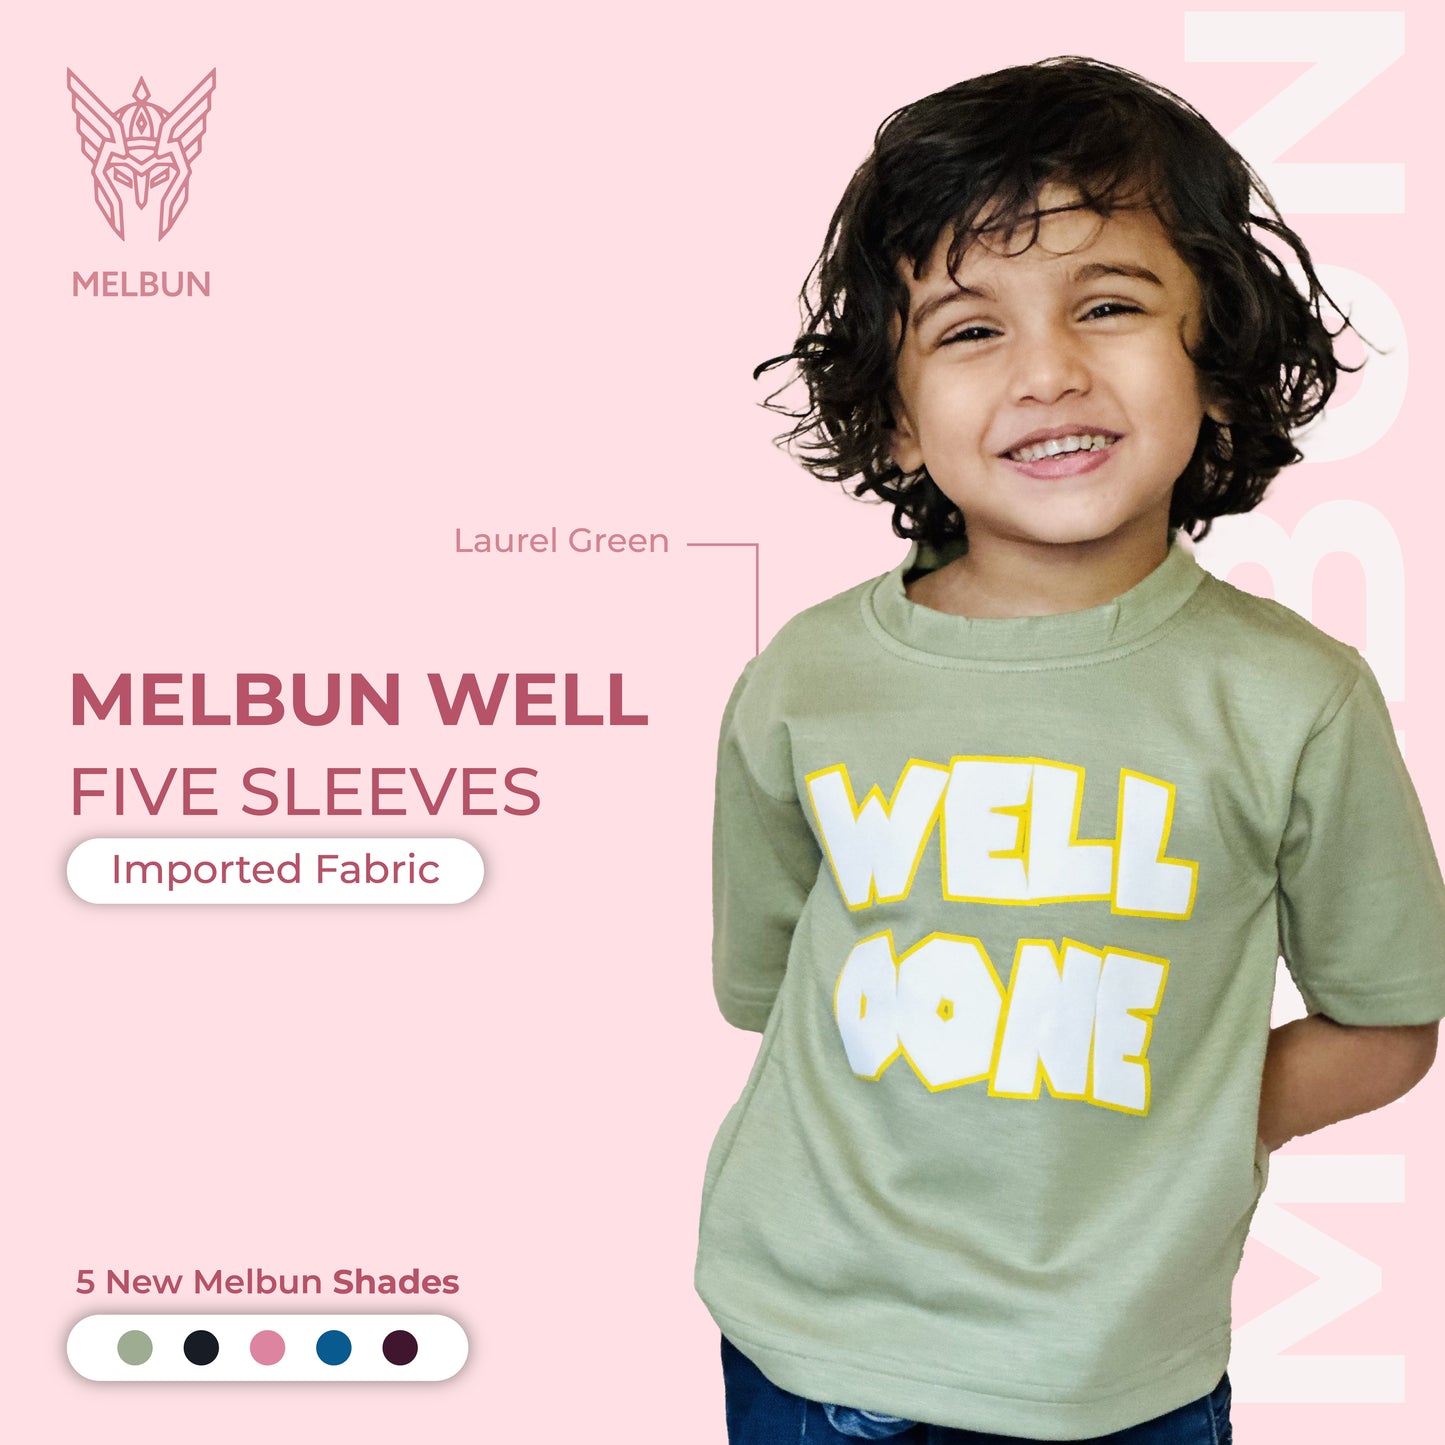 Laurel Green Melbun Well Five Sleeves T-shirt